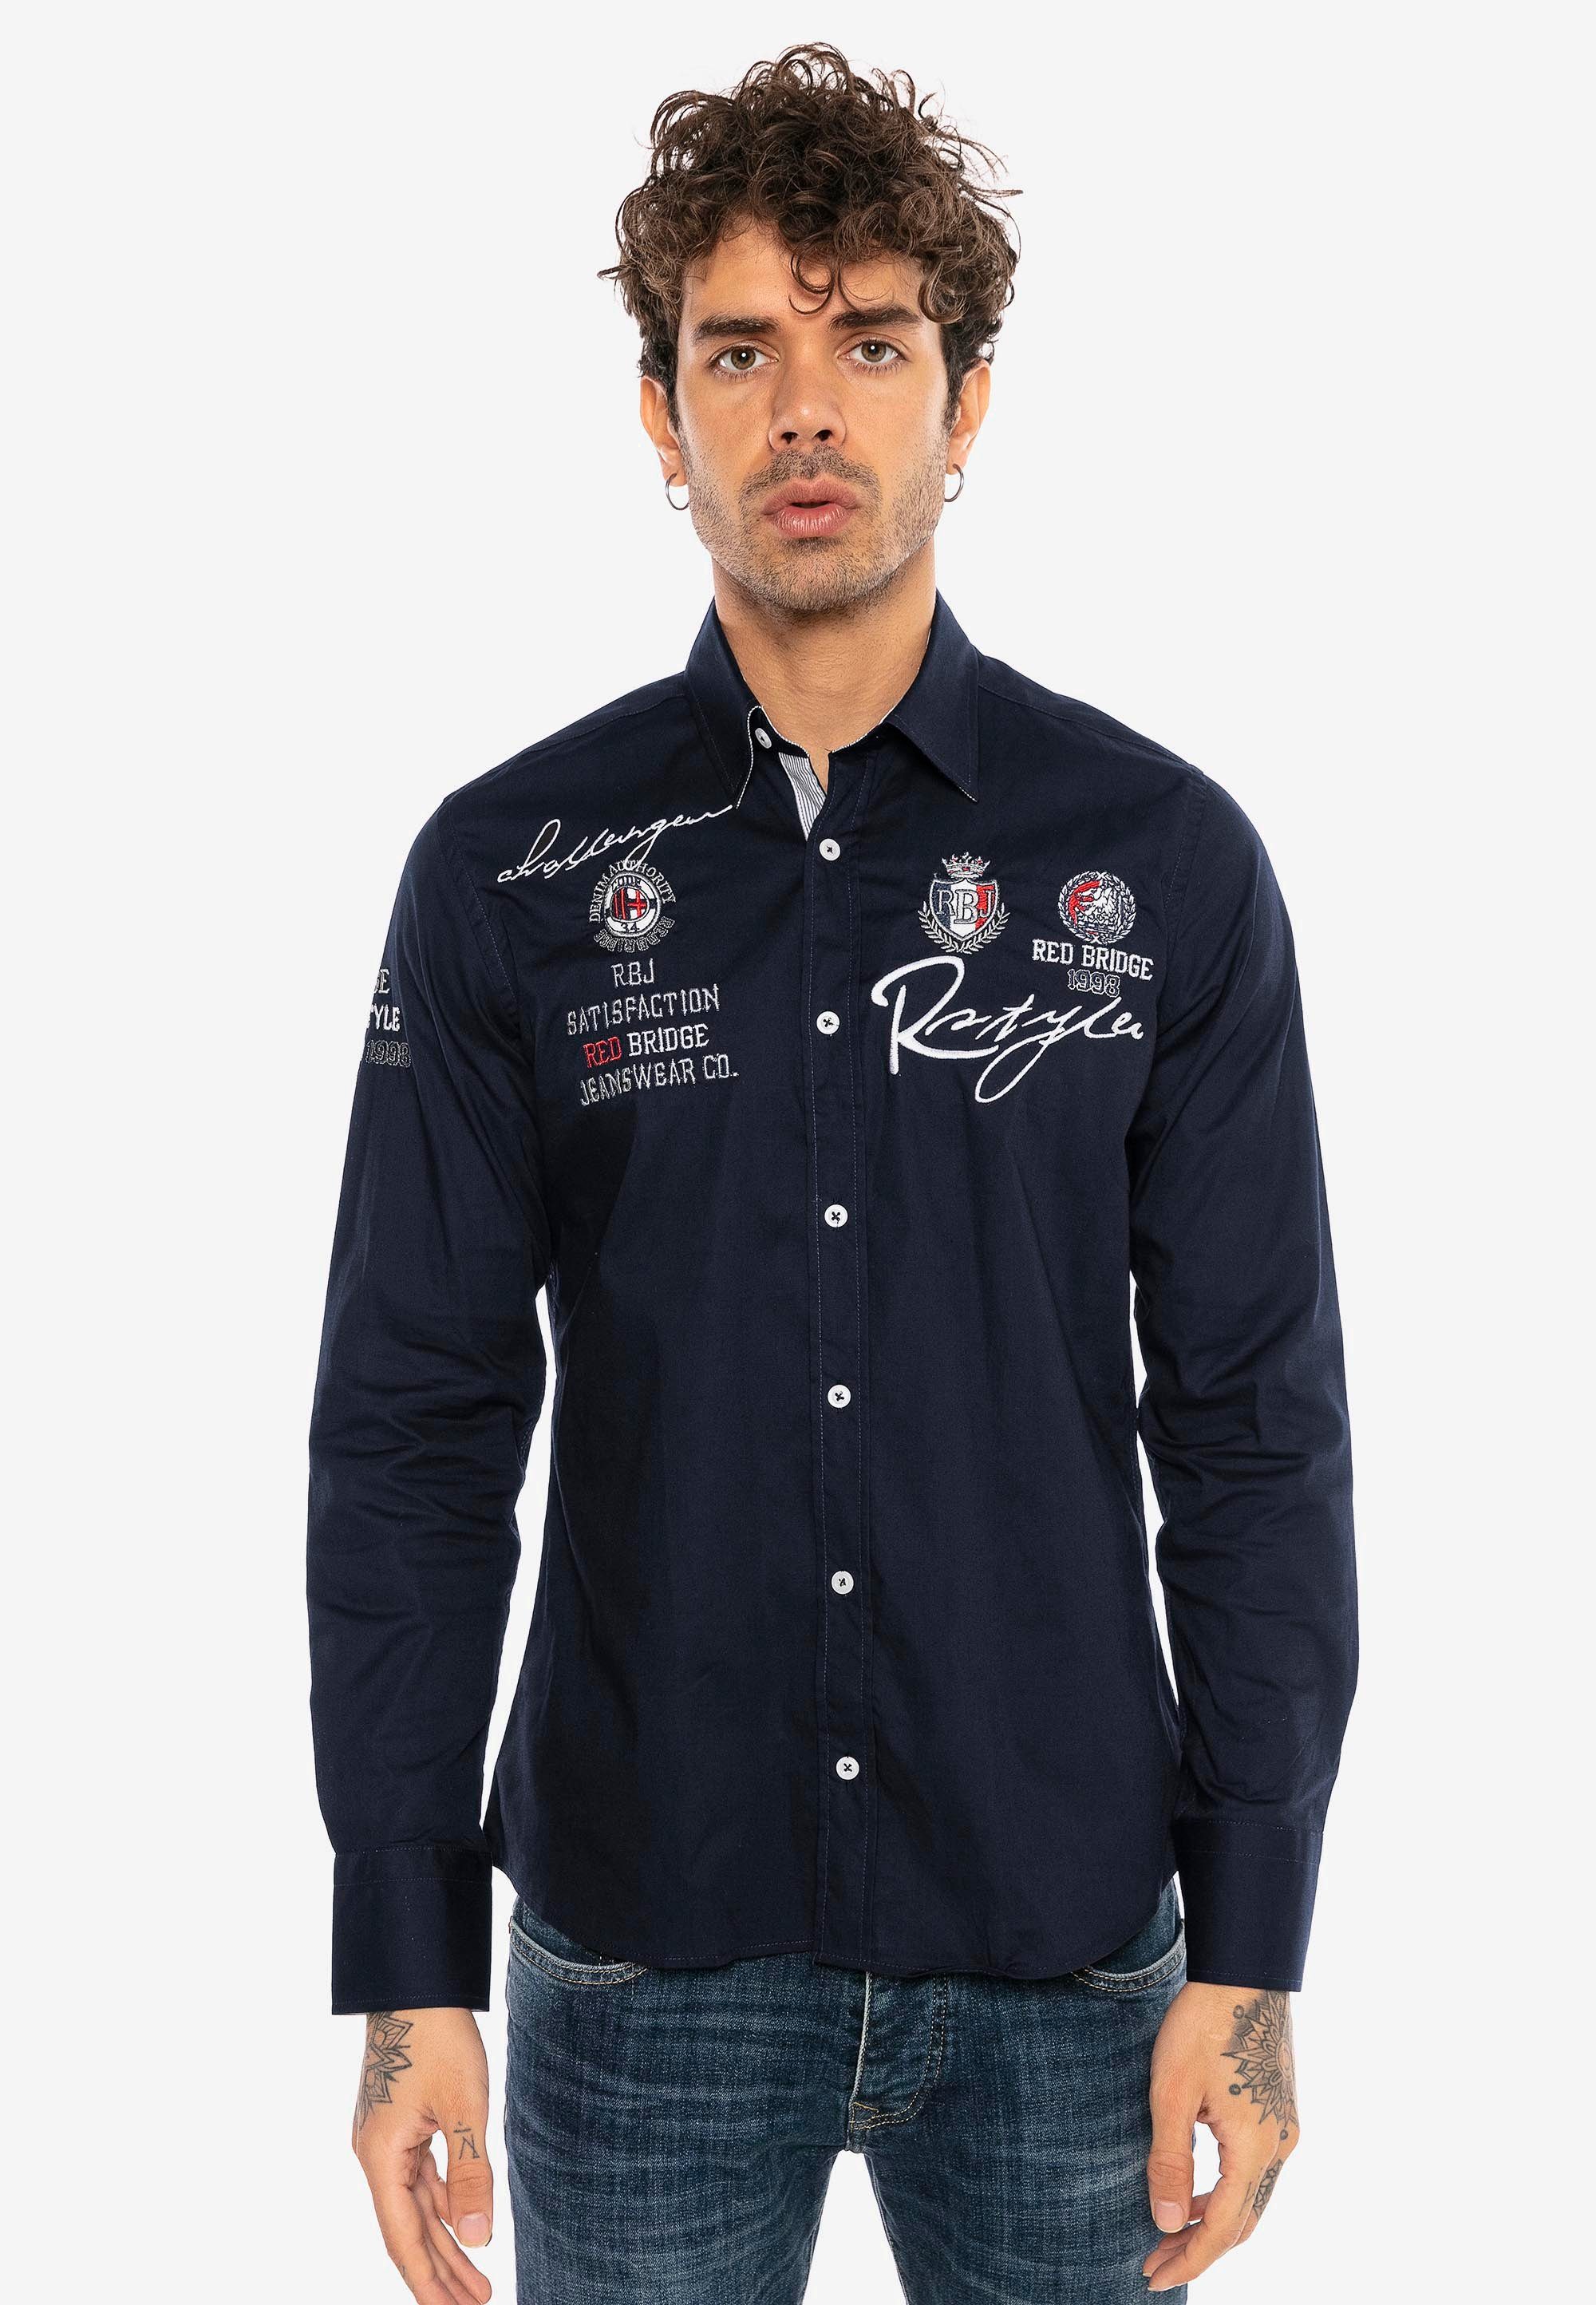 City Langarmhemd Stickerei im Slim Fit-Schnitt dunkelblau RedBridge Jersey mit